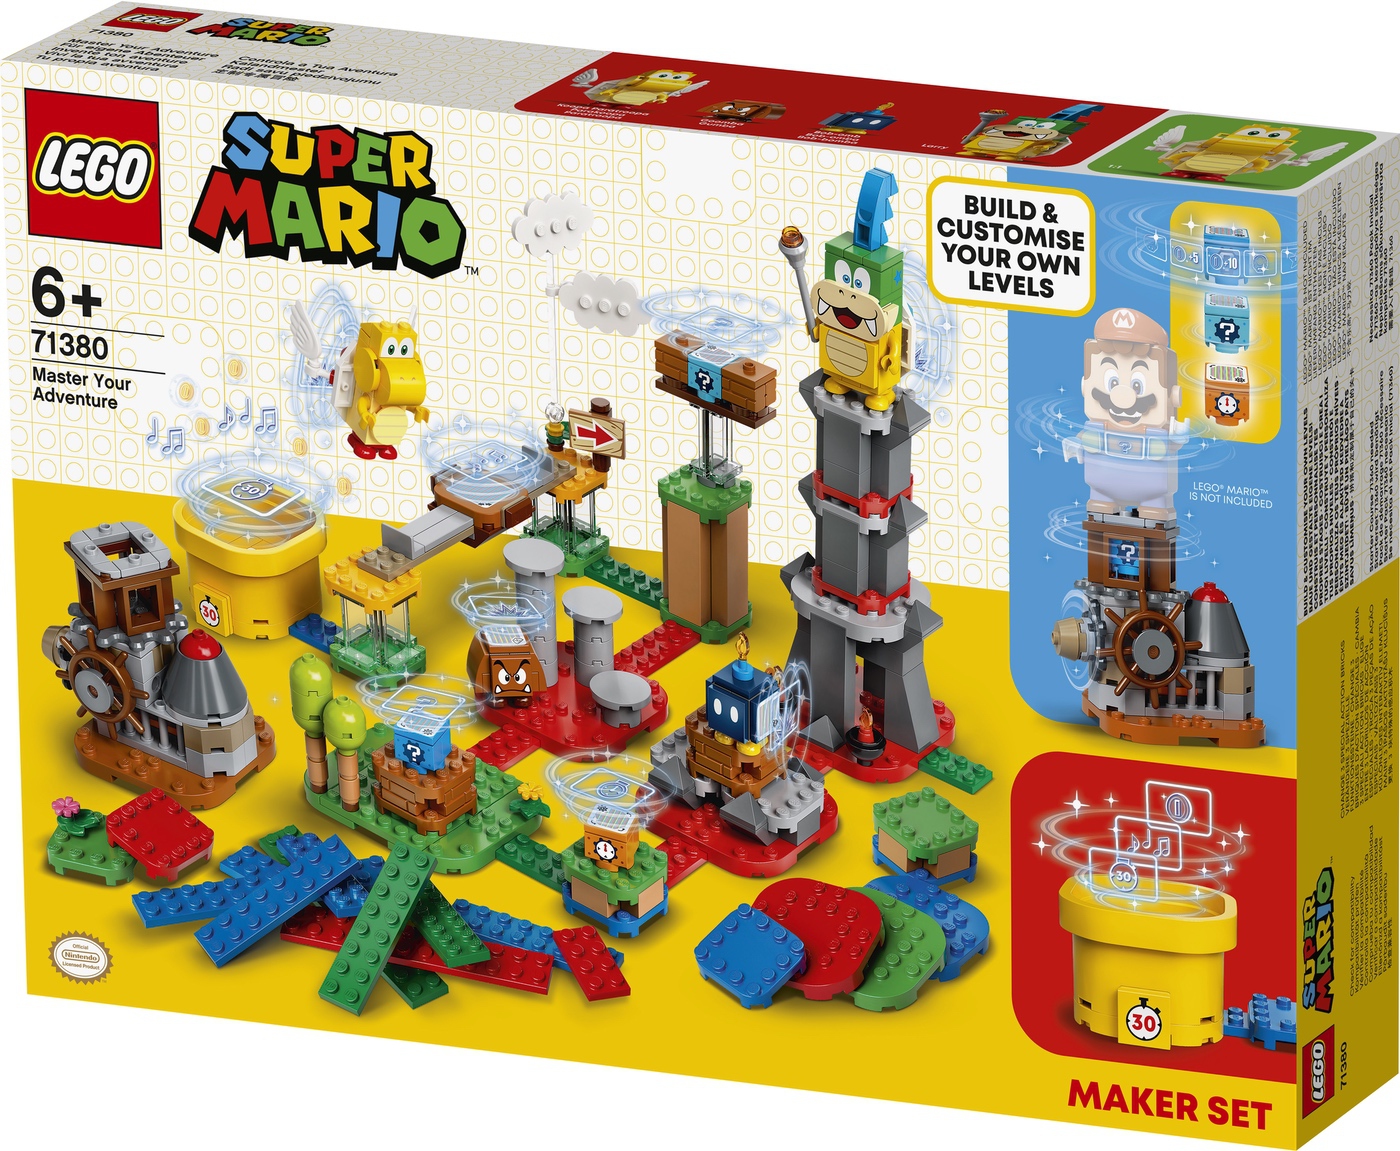 LEGO Super Mario Maker Set